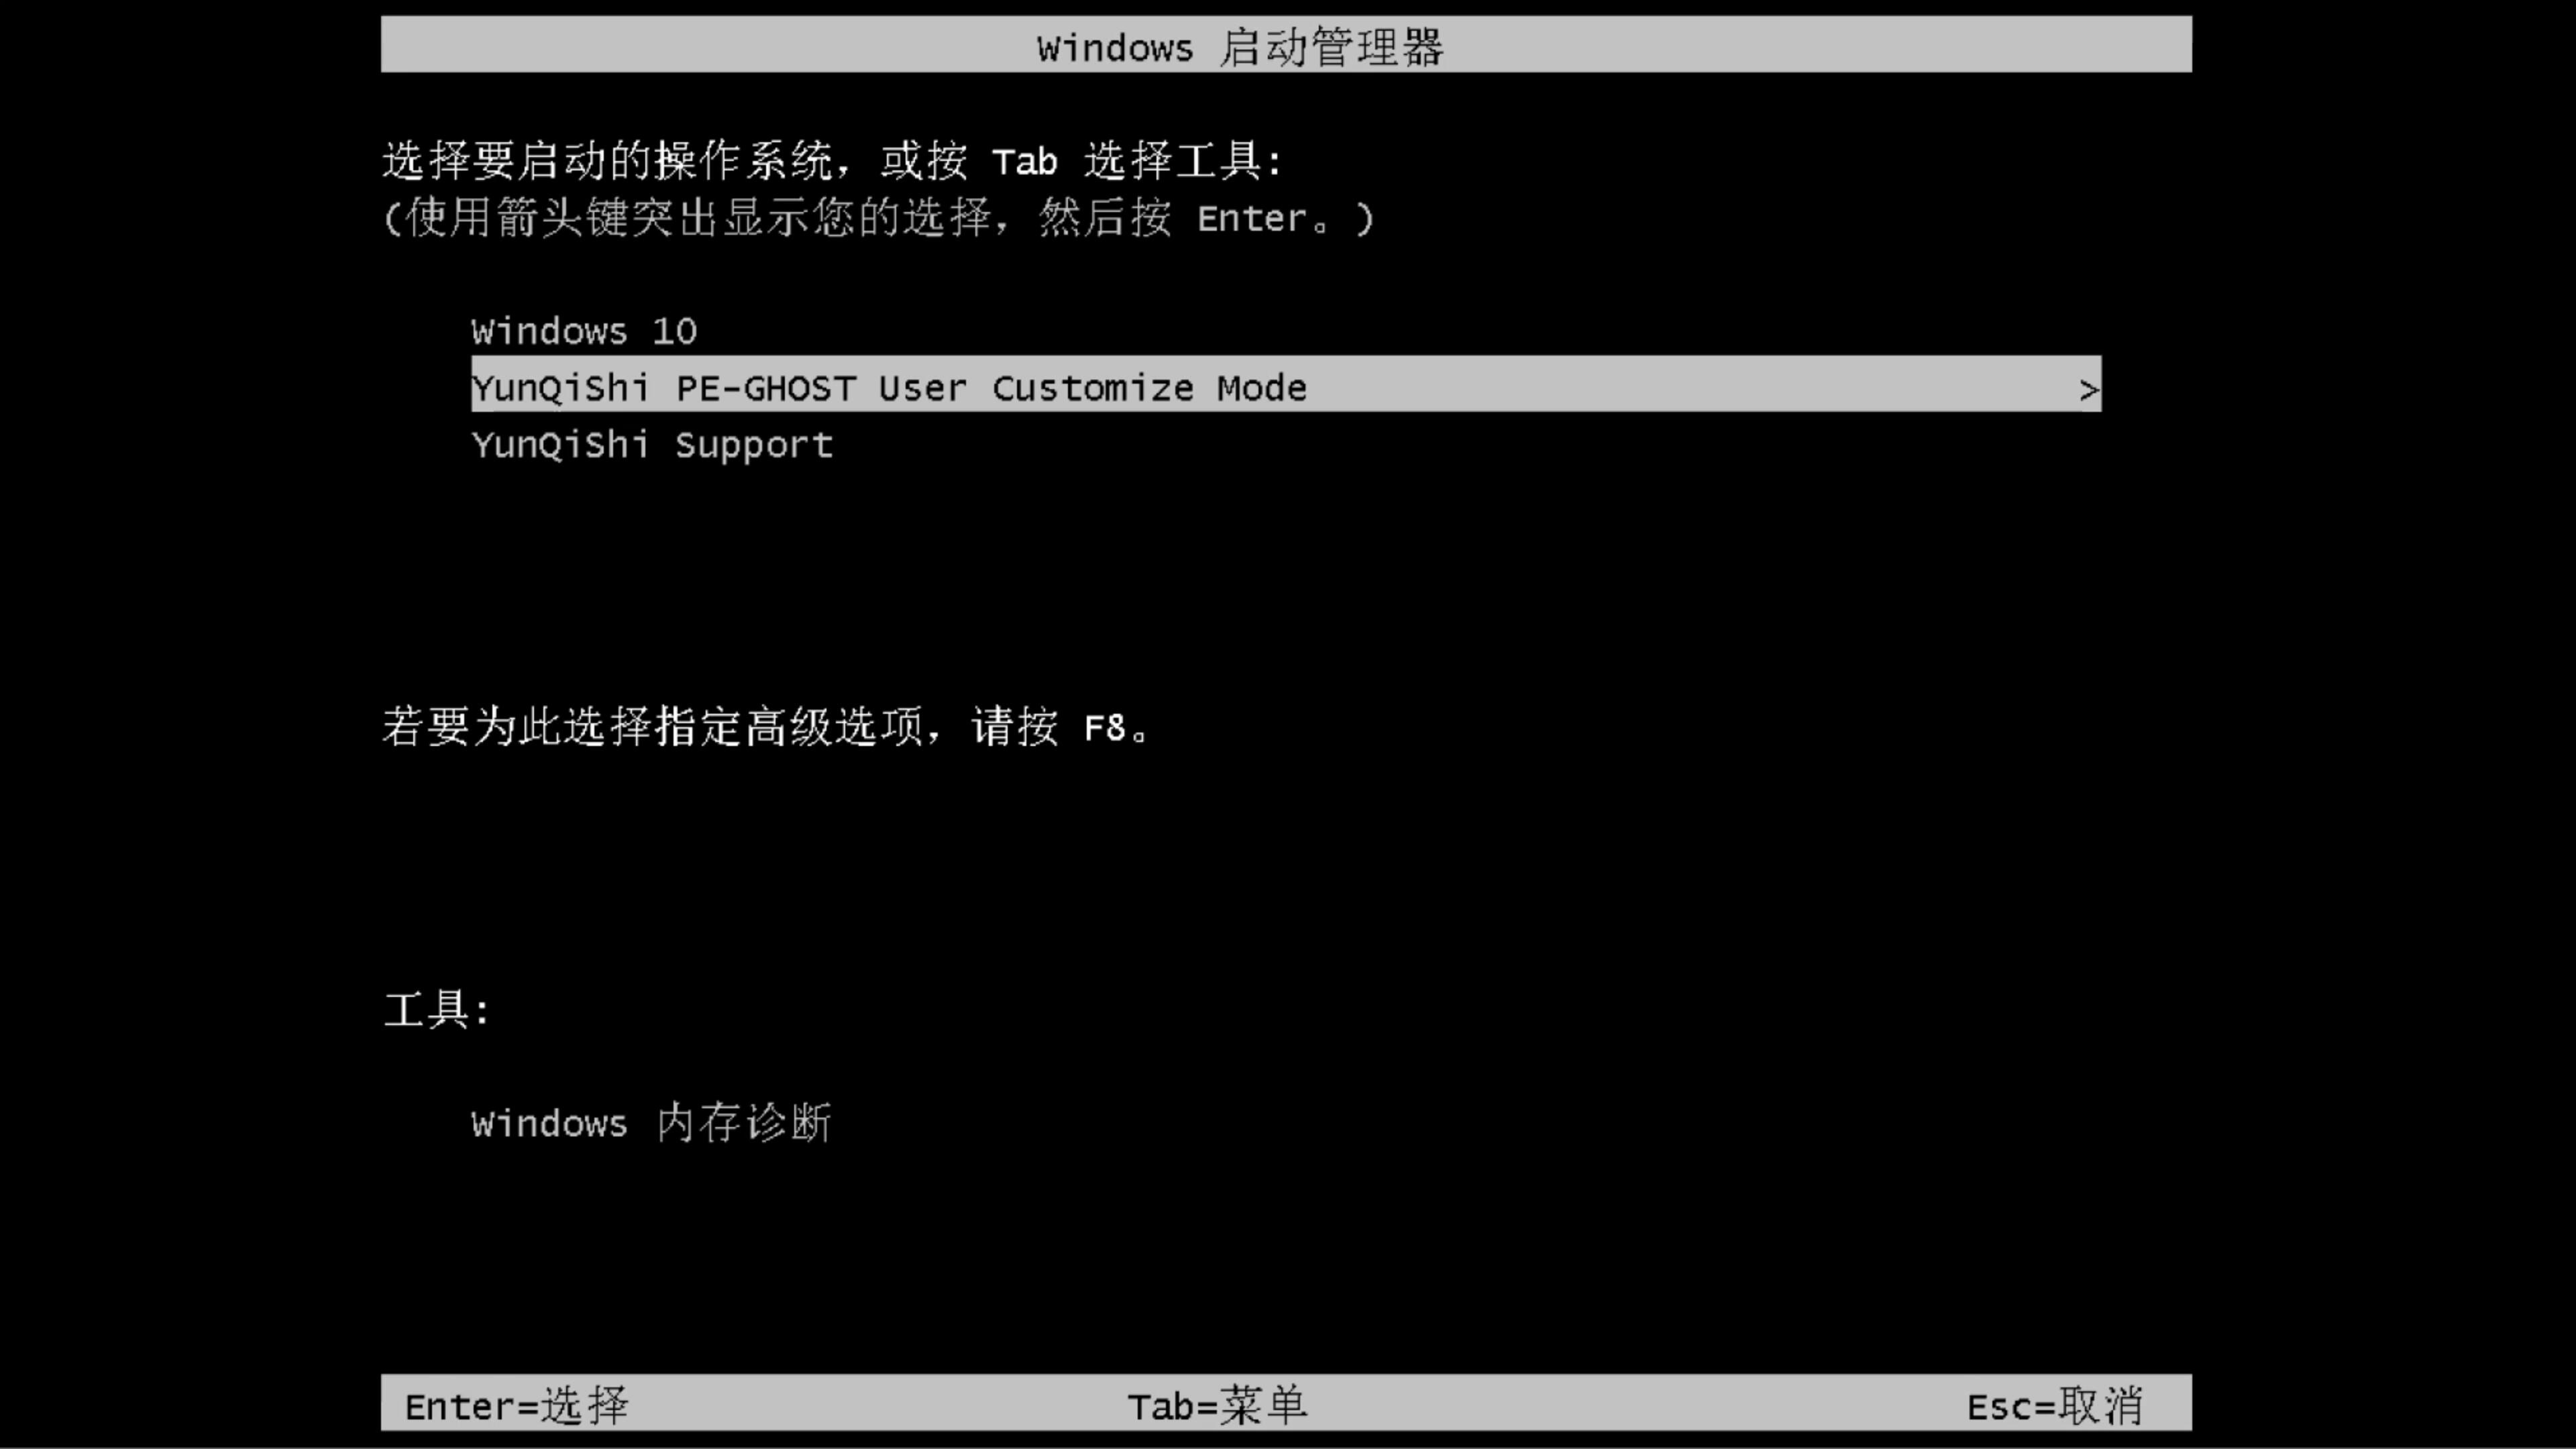 苹果笔记本专用系统  WINDOWS7 x64 SP1 纯净中文旗舰版系统下载 V2022.05(9)